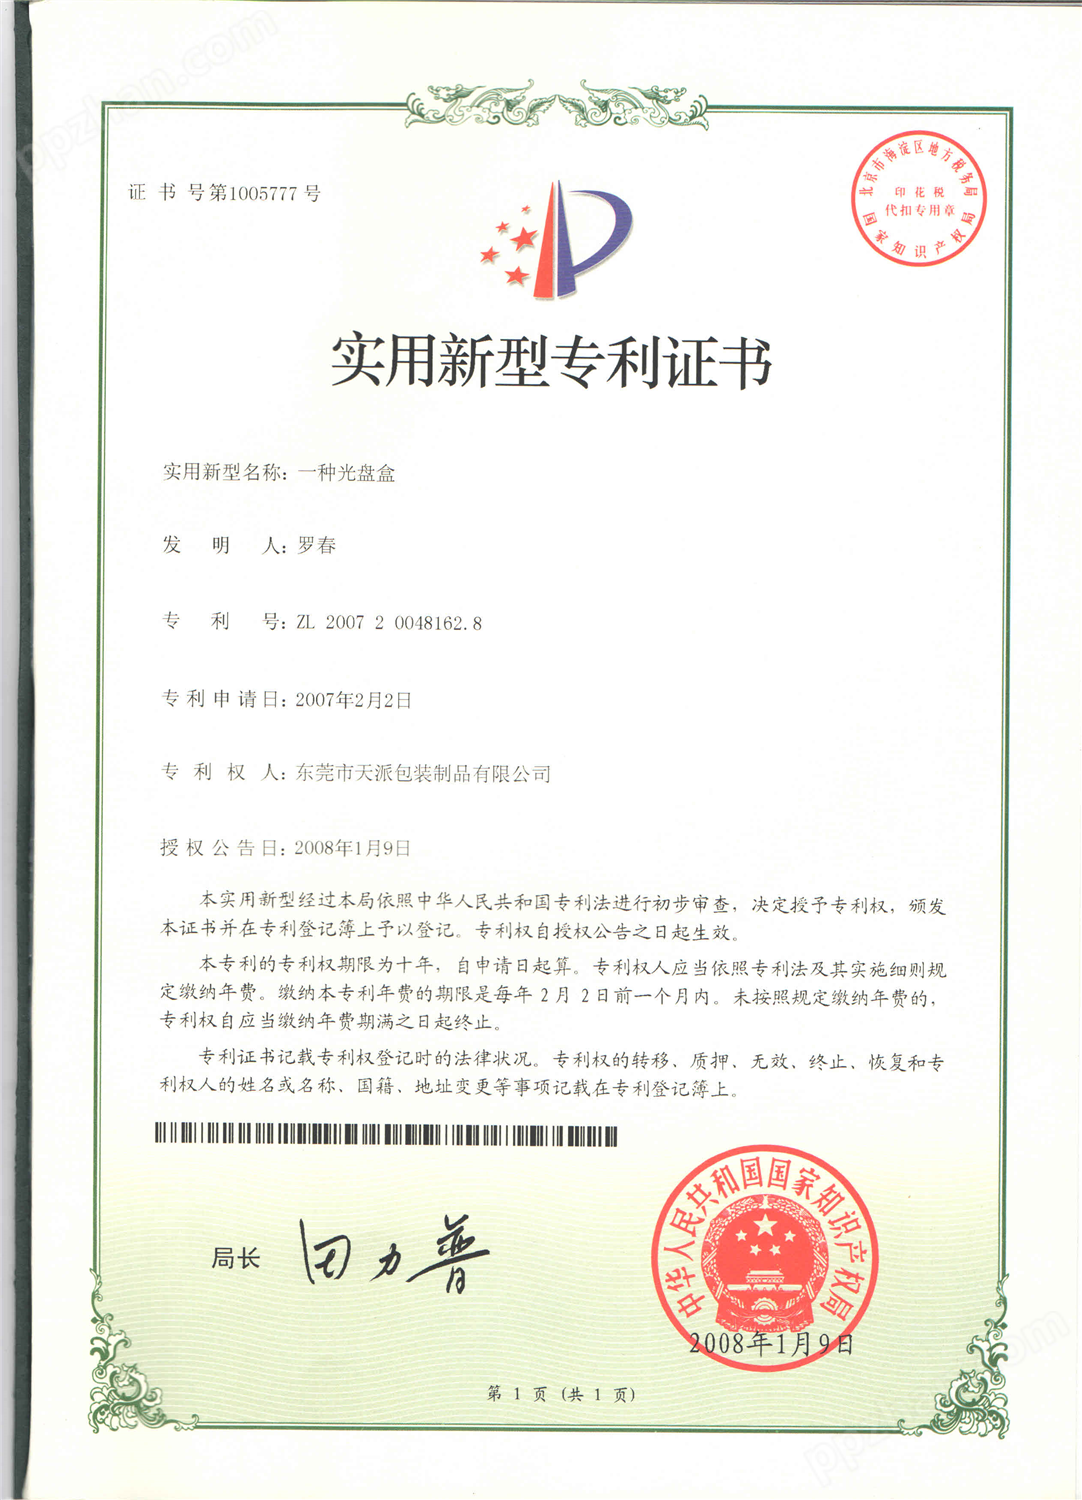 高档茶叶马口铁包装罐工厂专利证书